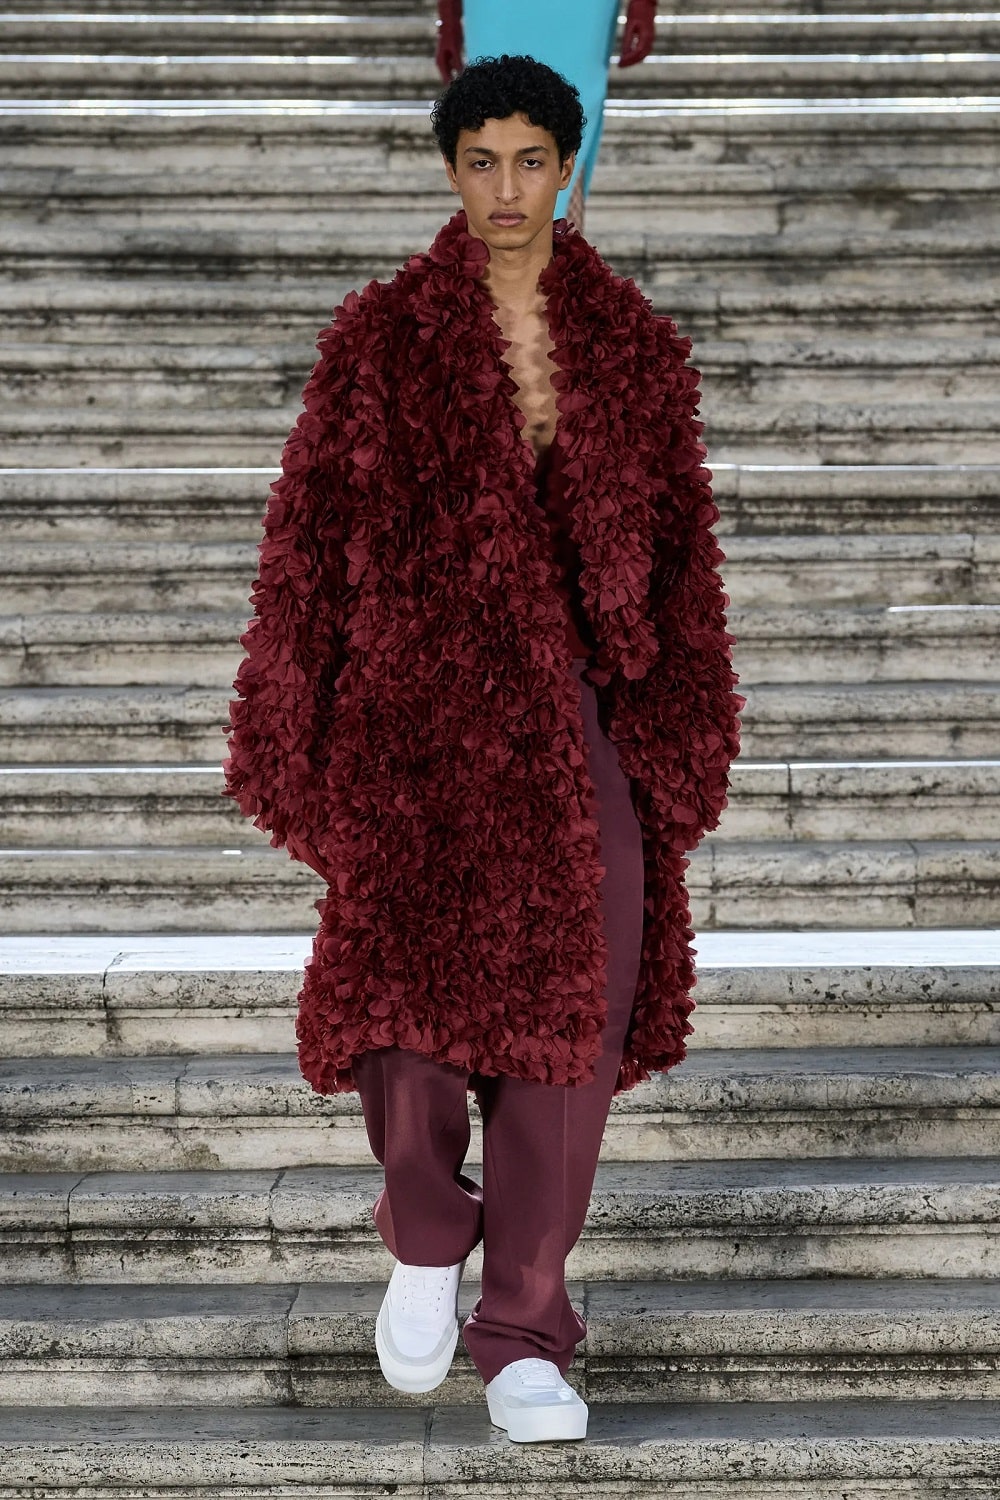 Valentino Couture Fall 2022 by Pierpaolo Piccioli